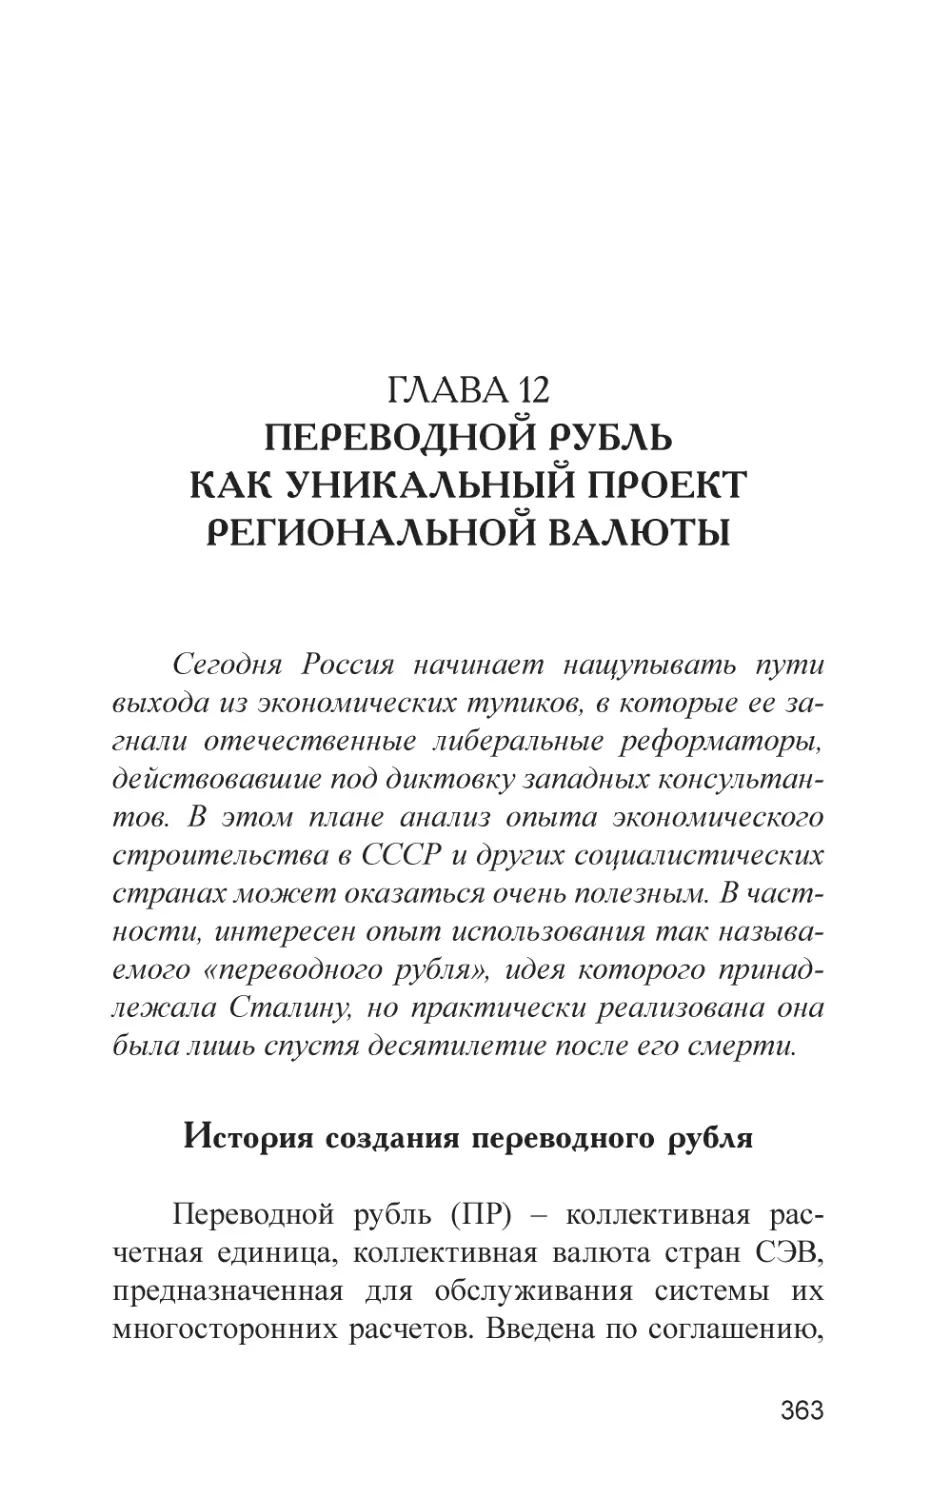 Глава 12. Переводной рубль как уникальный проект региональной валюты
История создания переводного рубля